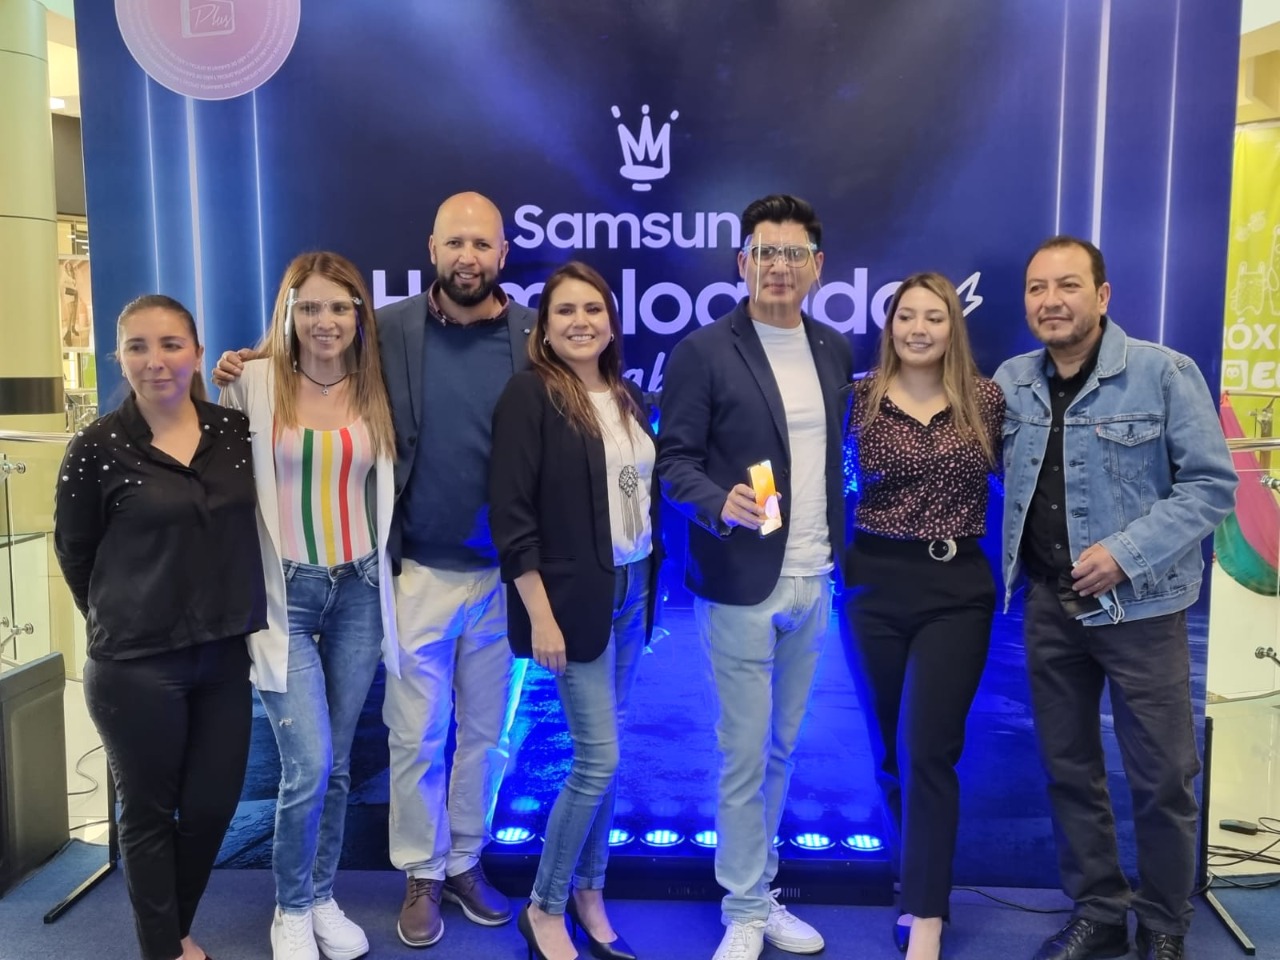 Samsung presenta campaña “homologado” en Bolivia junto a la serie Galaxy A